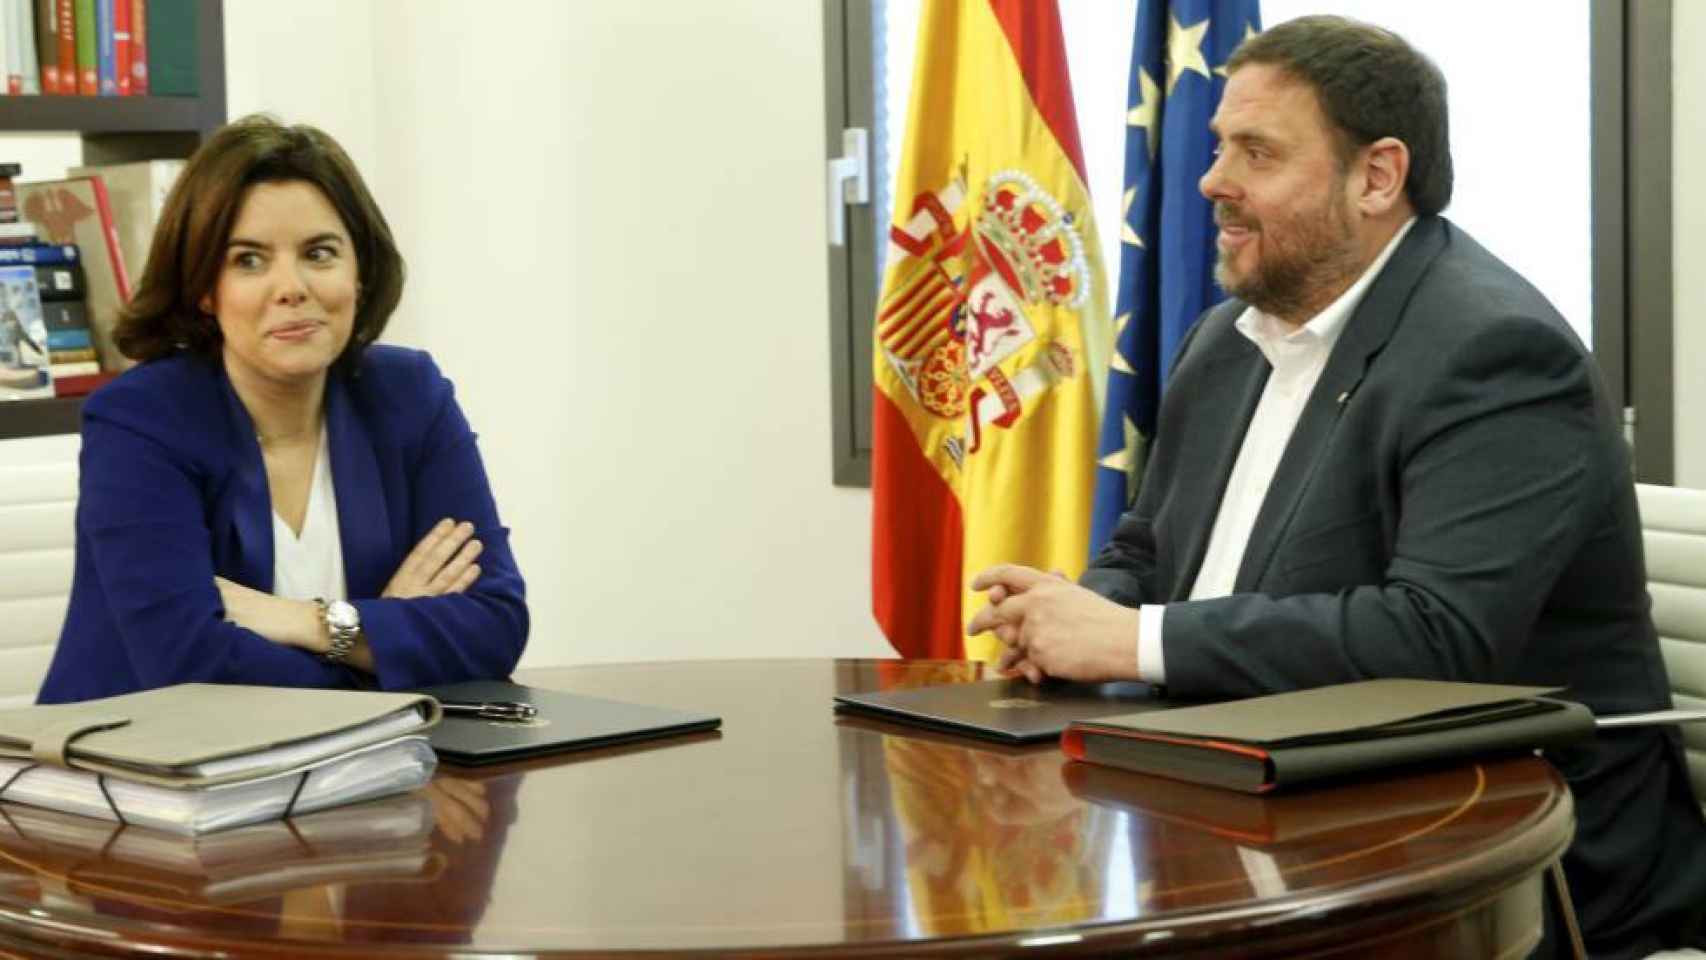 La vicepresidenta del Gobierna, Soraya Sáenz de Santamaría, en un encuentro con el encarcelado Oriol Junqueras.